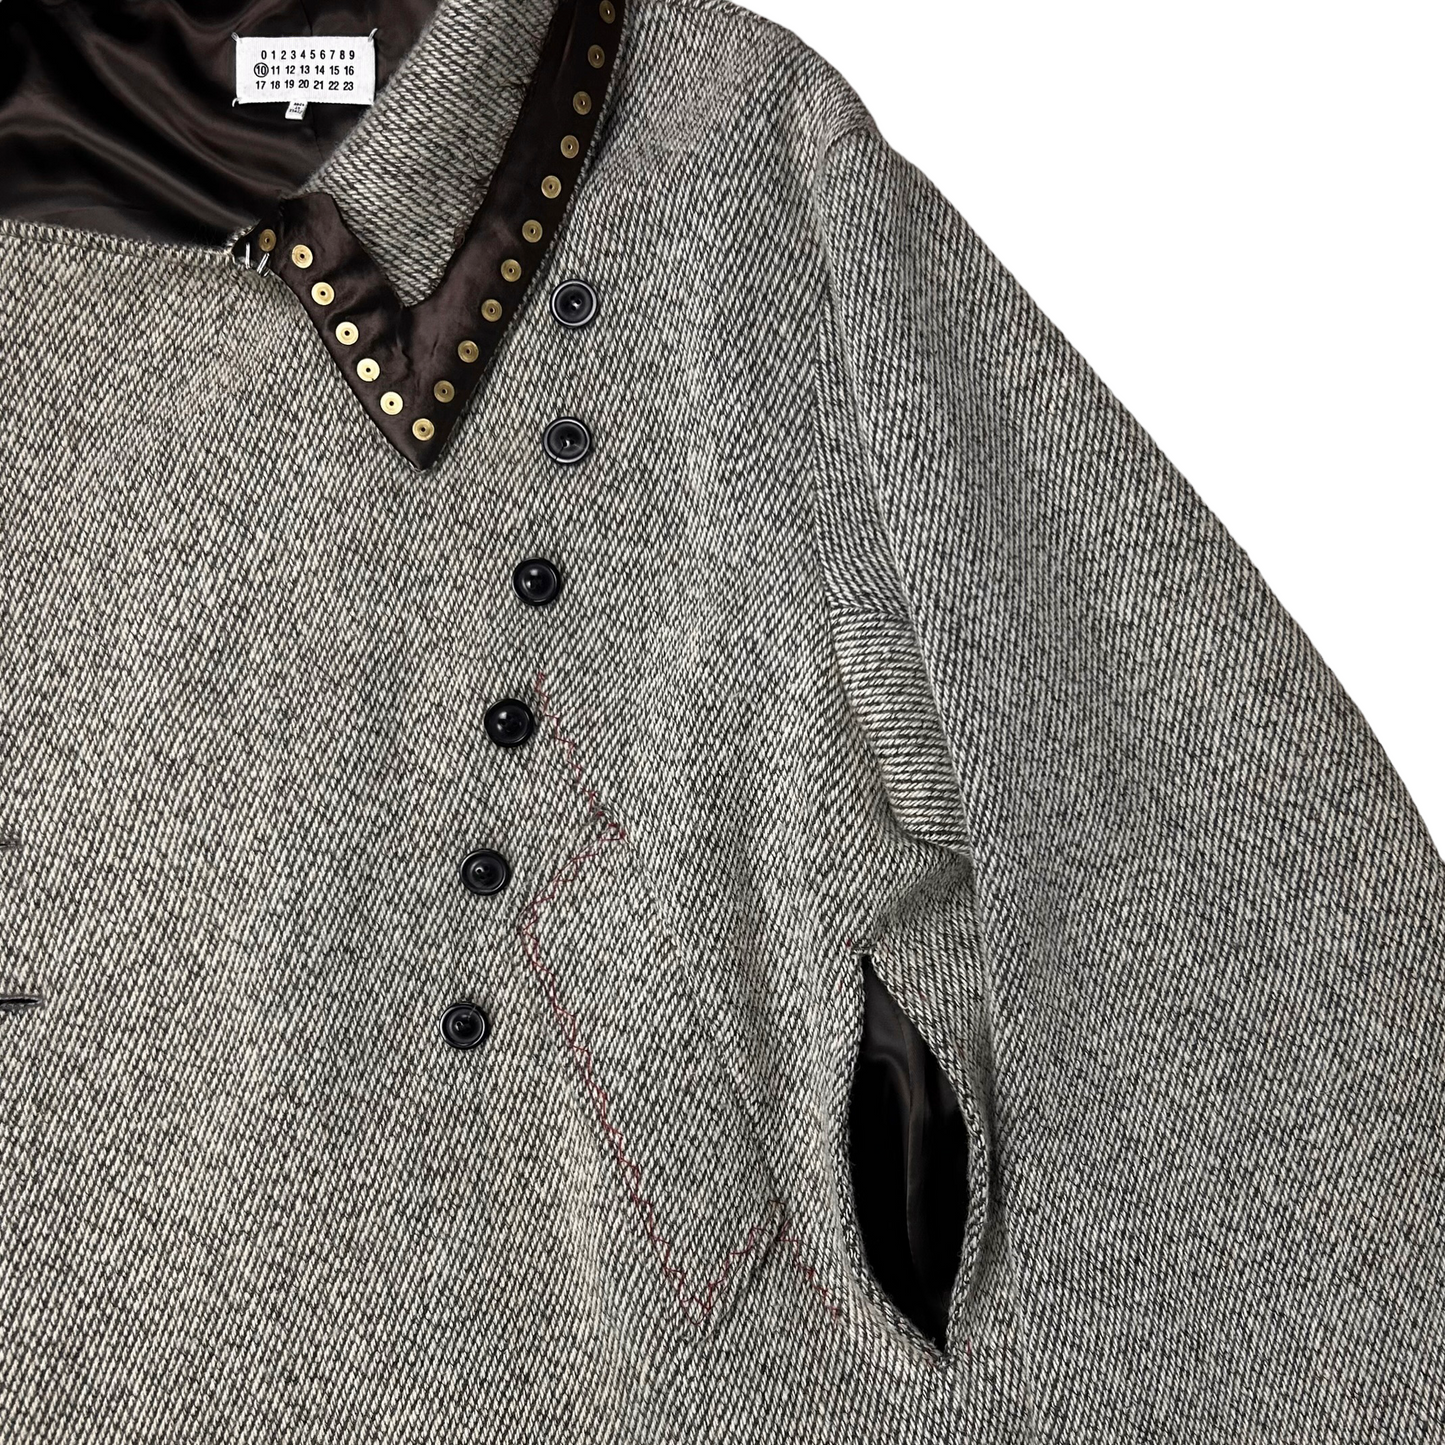 Maison Margiela Studded Double Breasted Wool Coat - AW20